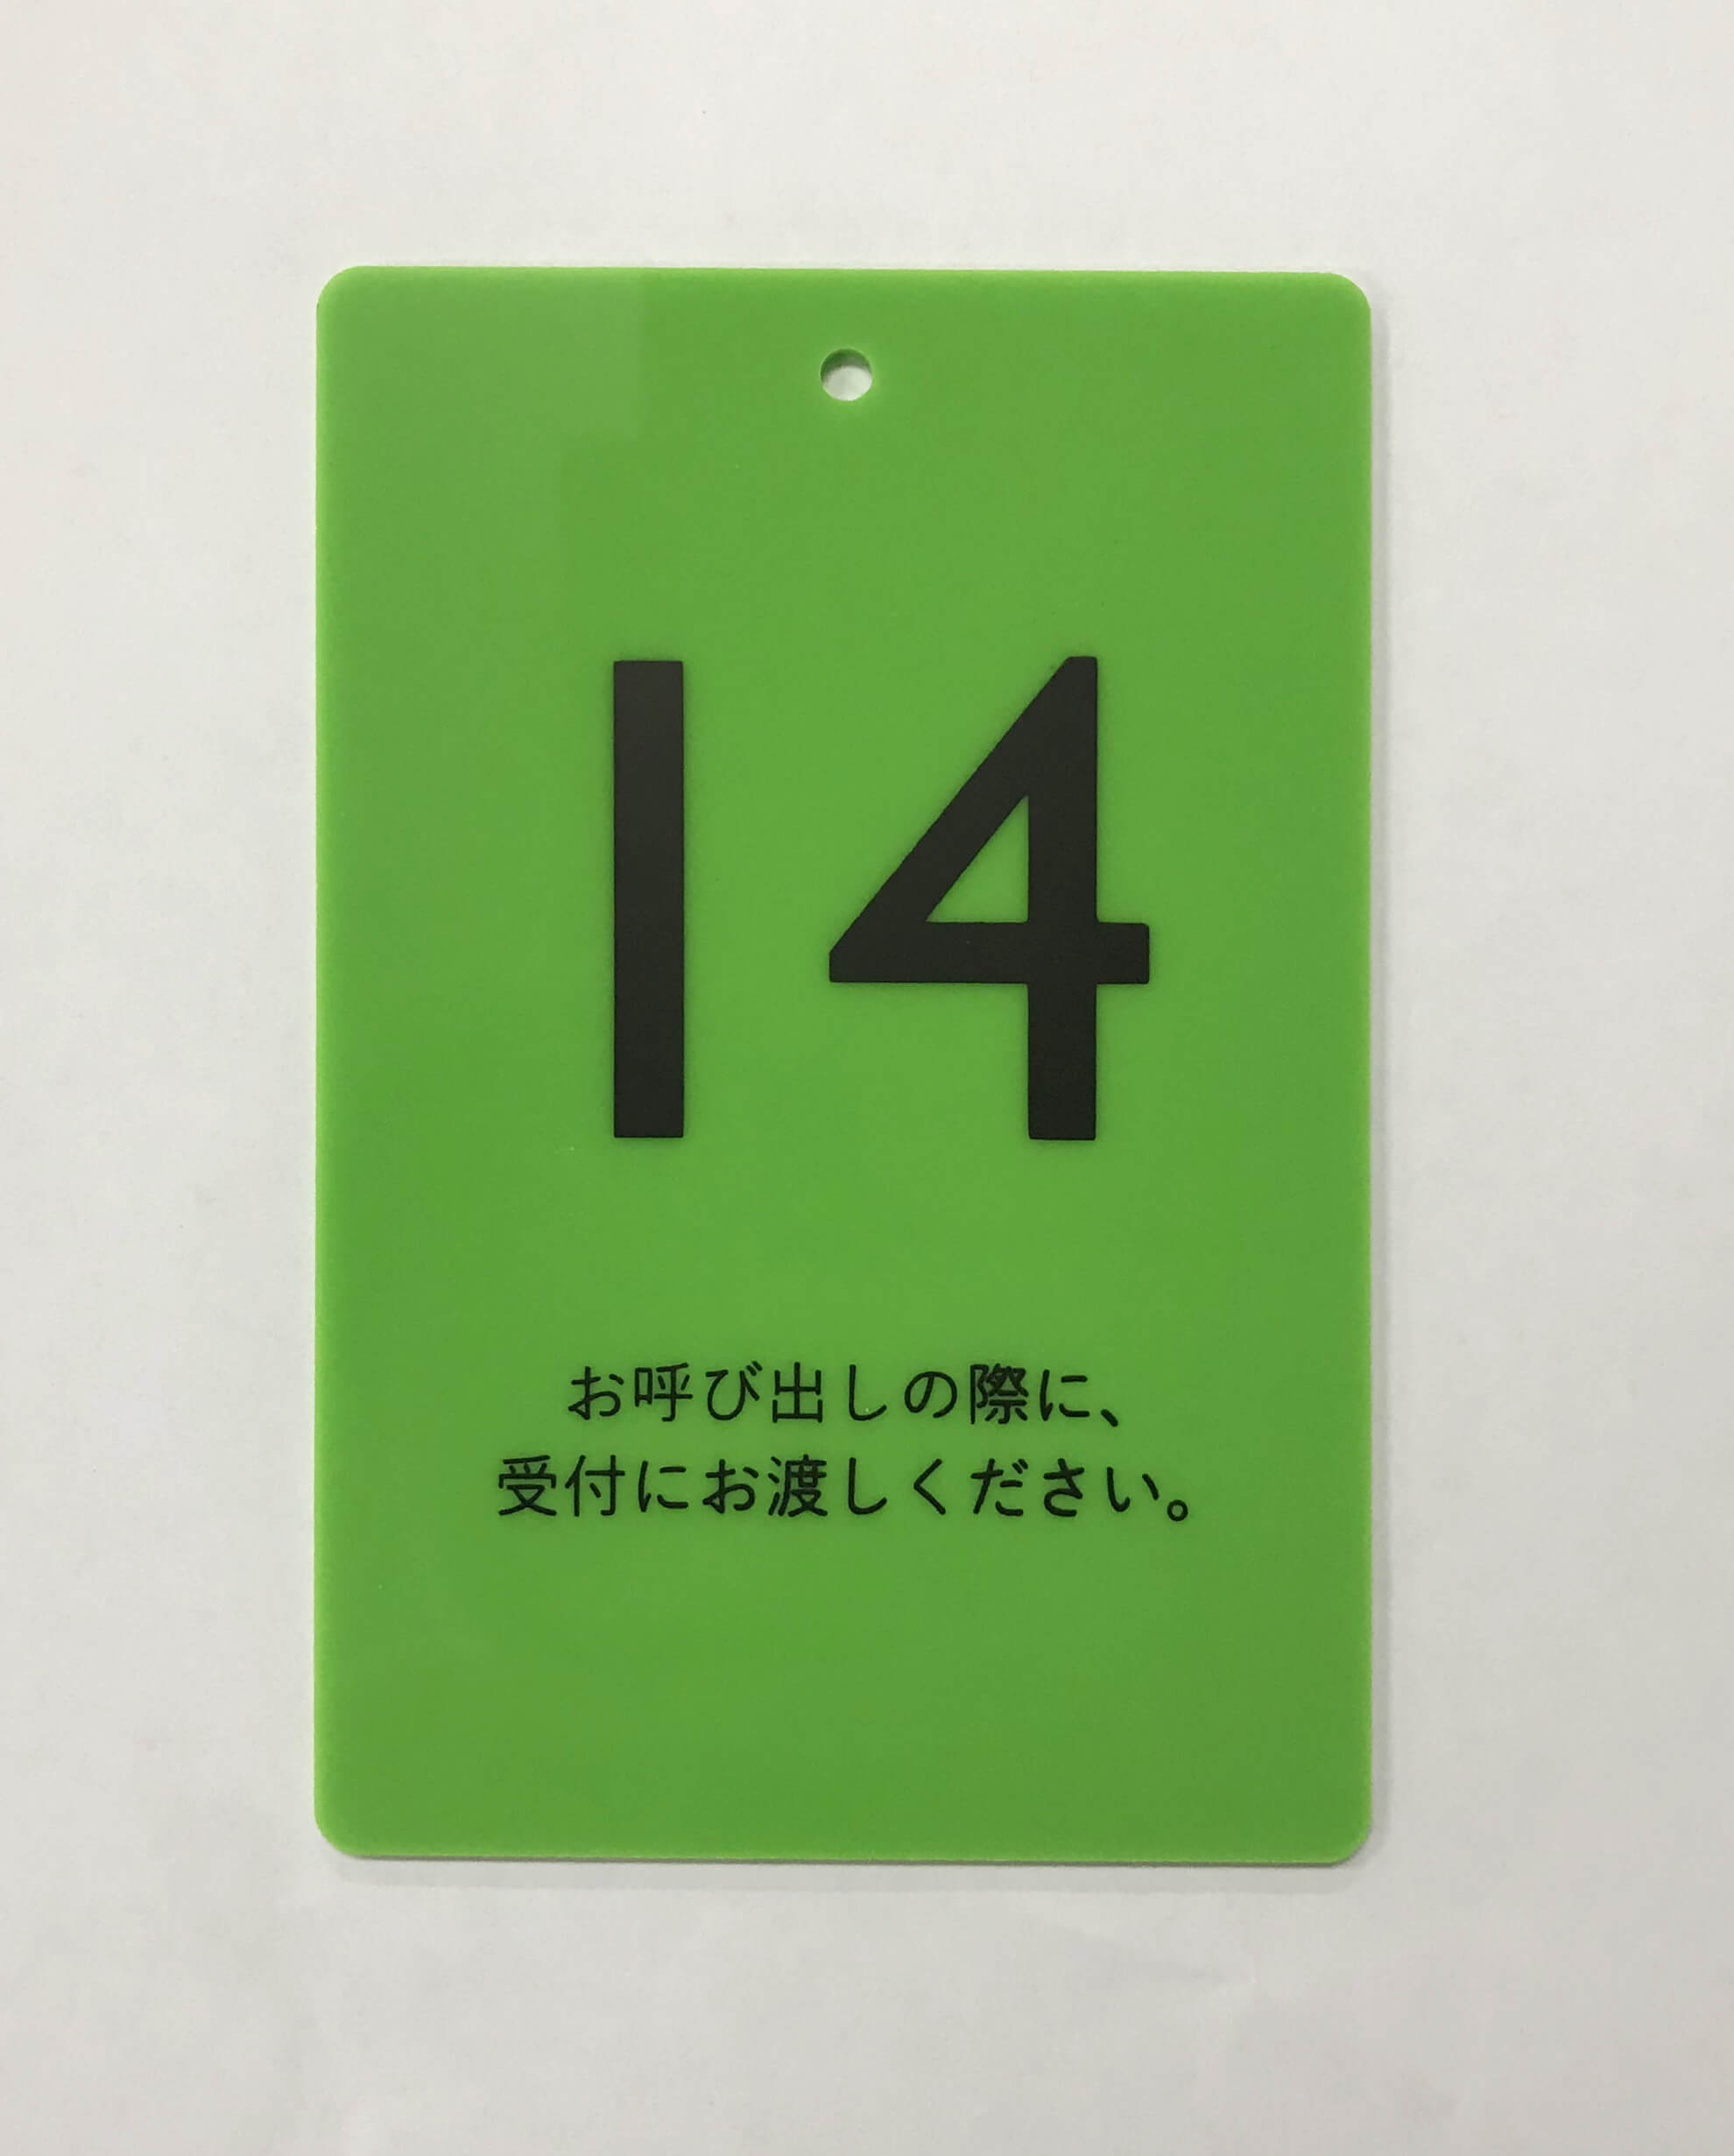 緑のプレートに数字や文字を印刷